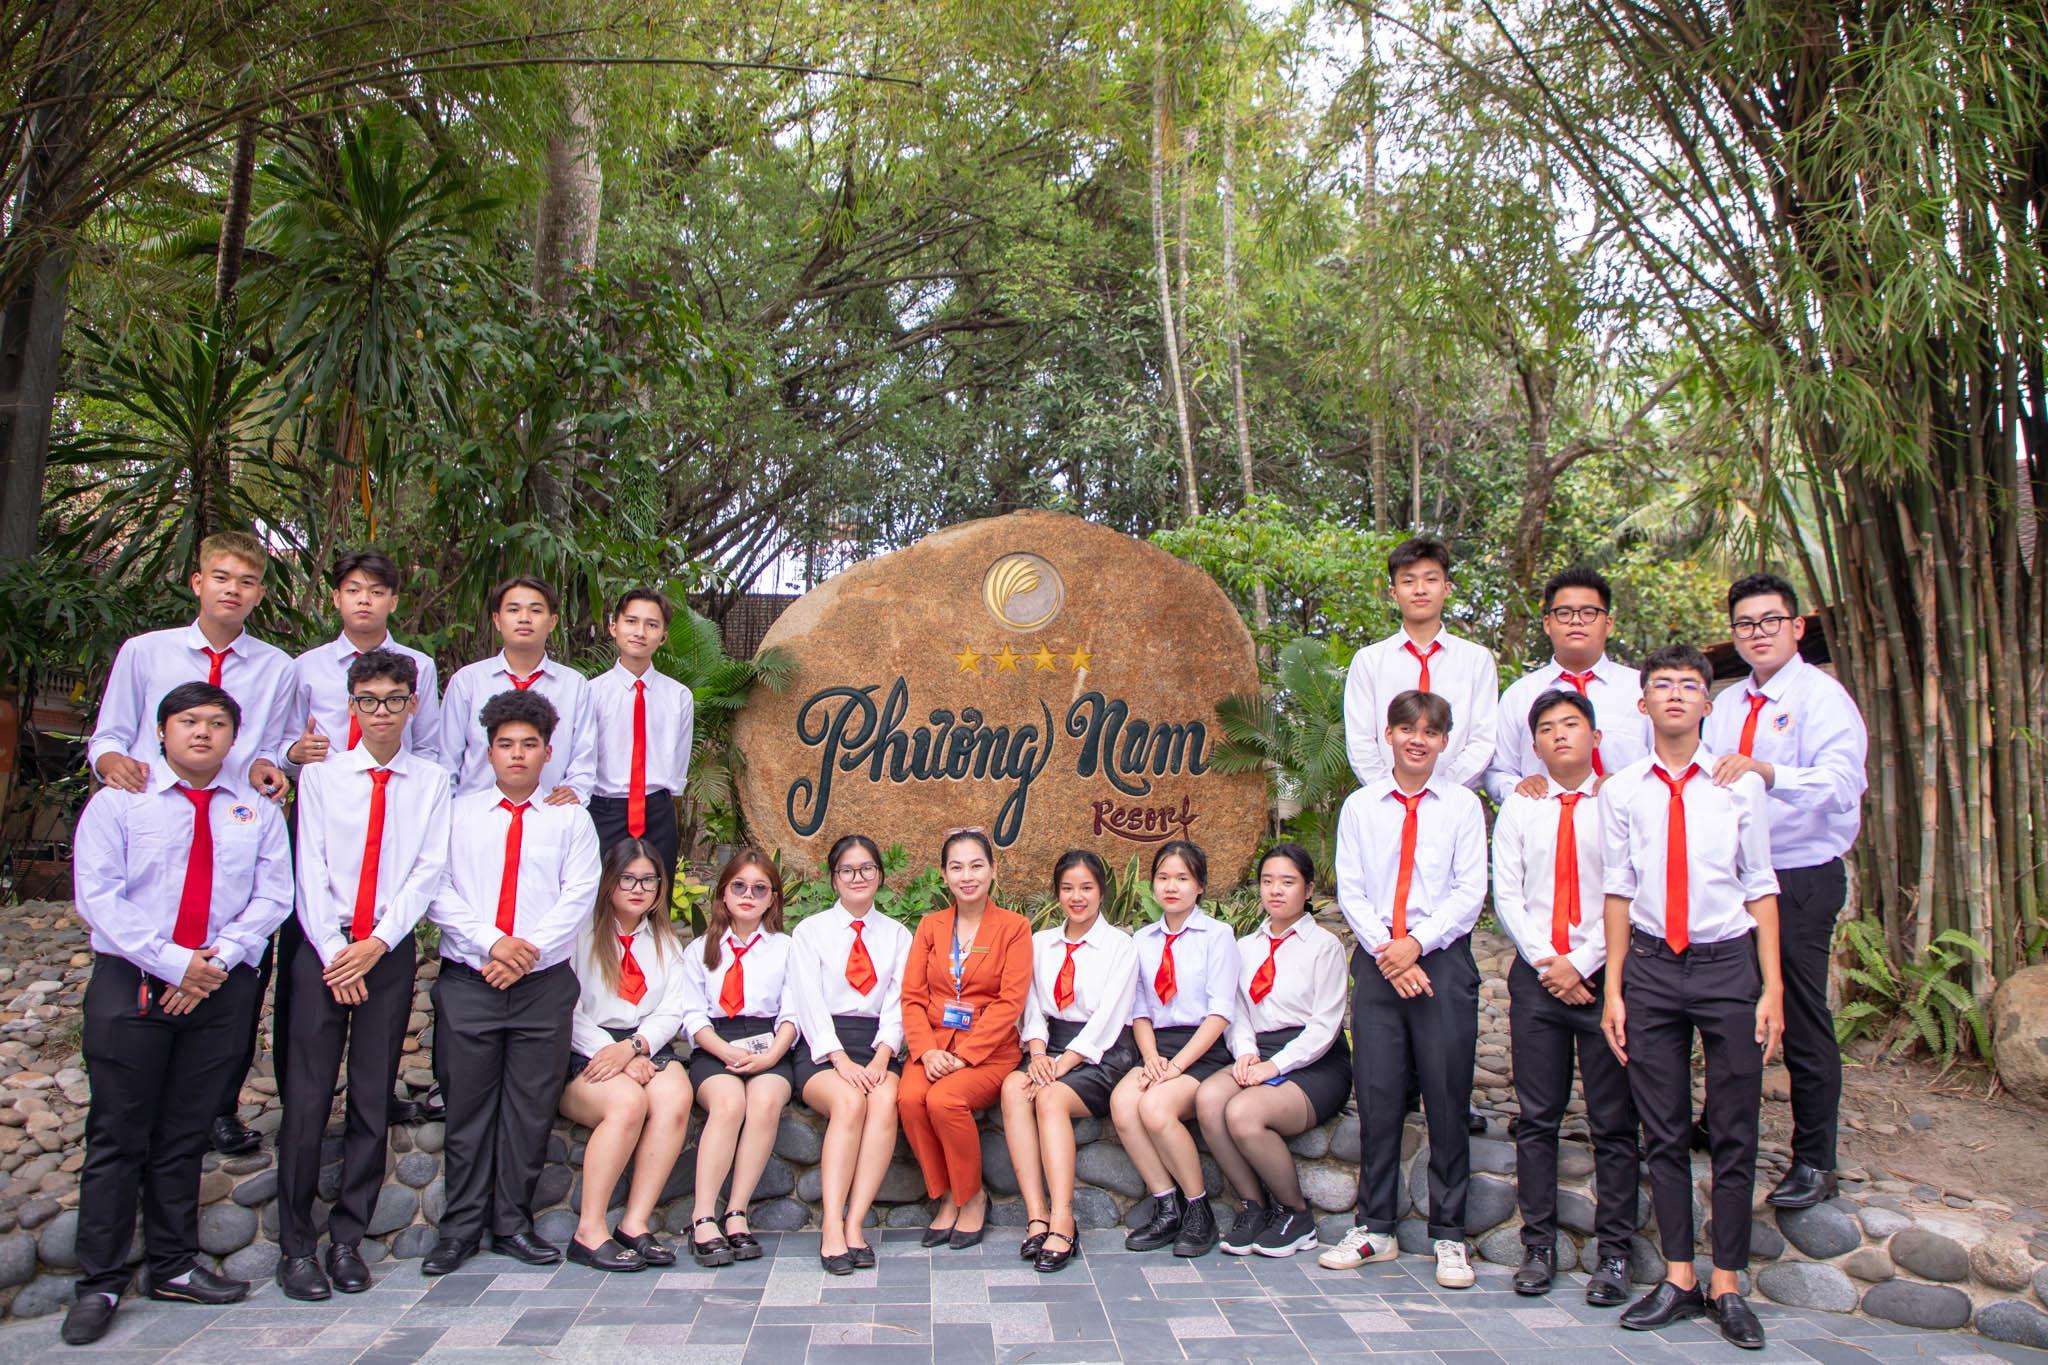 SIUers trải nghiệm khu ngh?dưỡng xanh - Phương Nam Resort